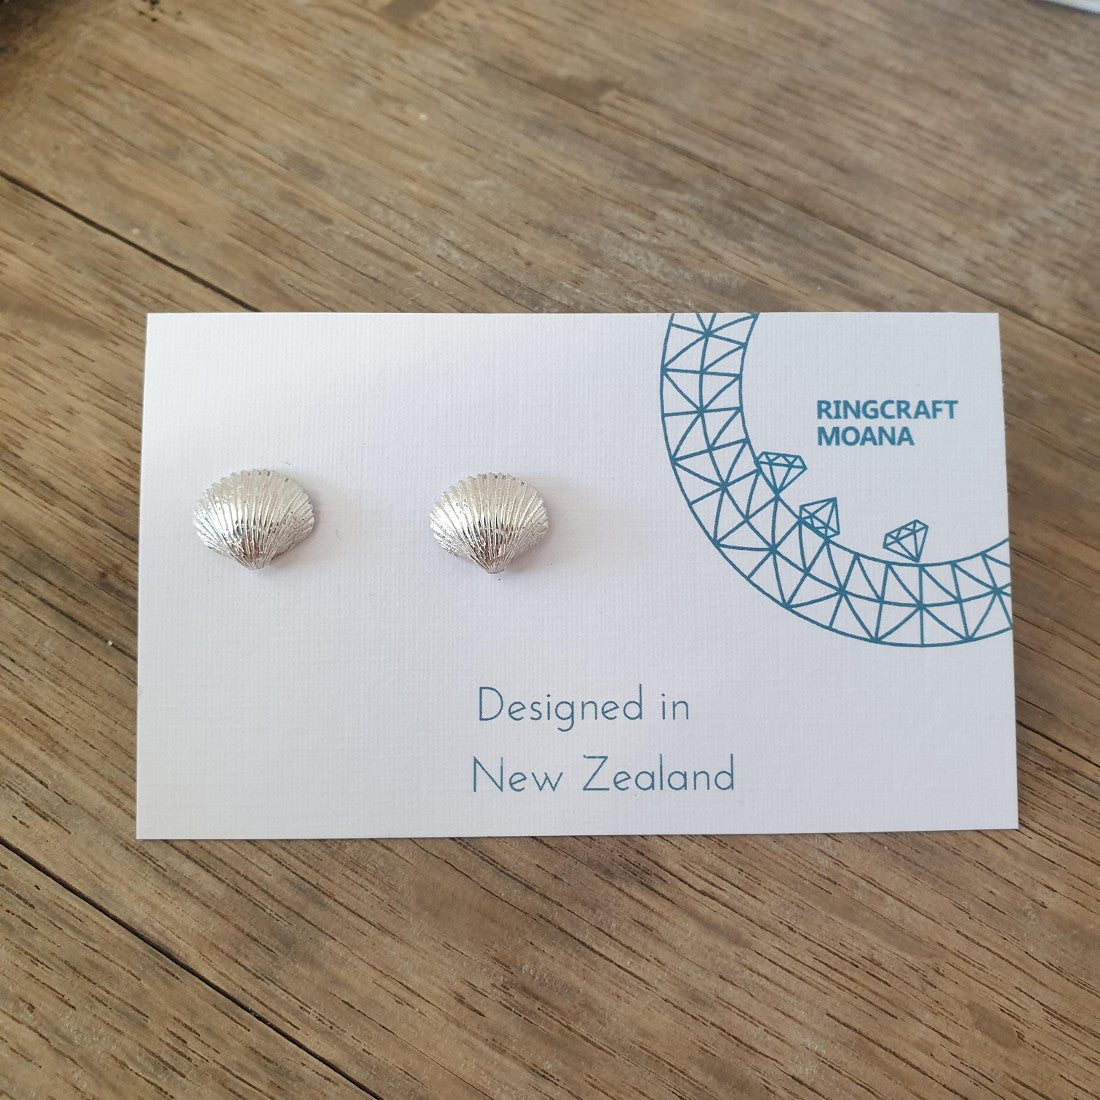 Shell silver earrings